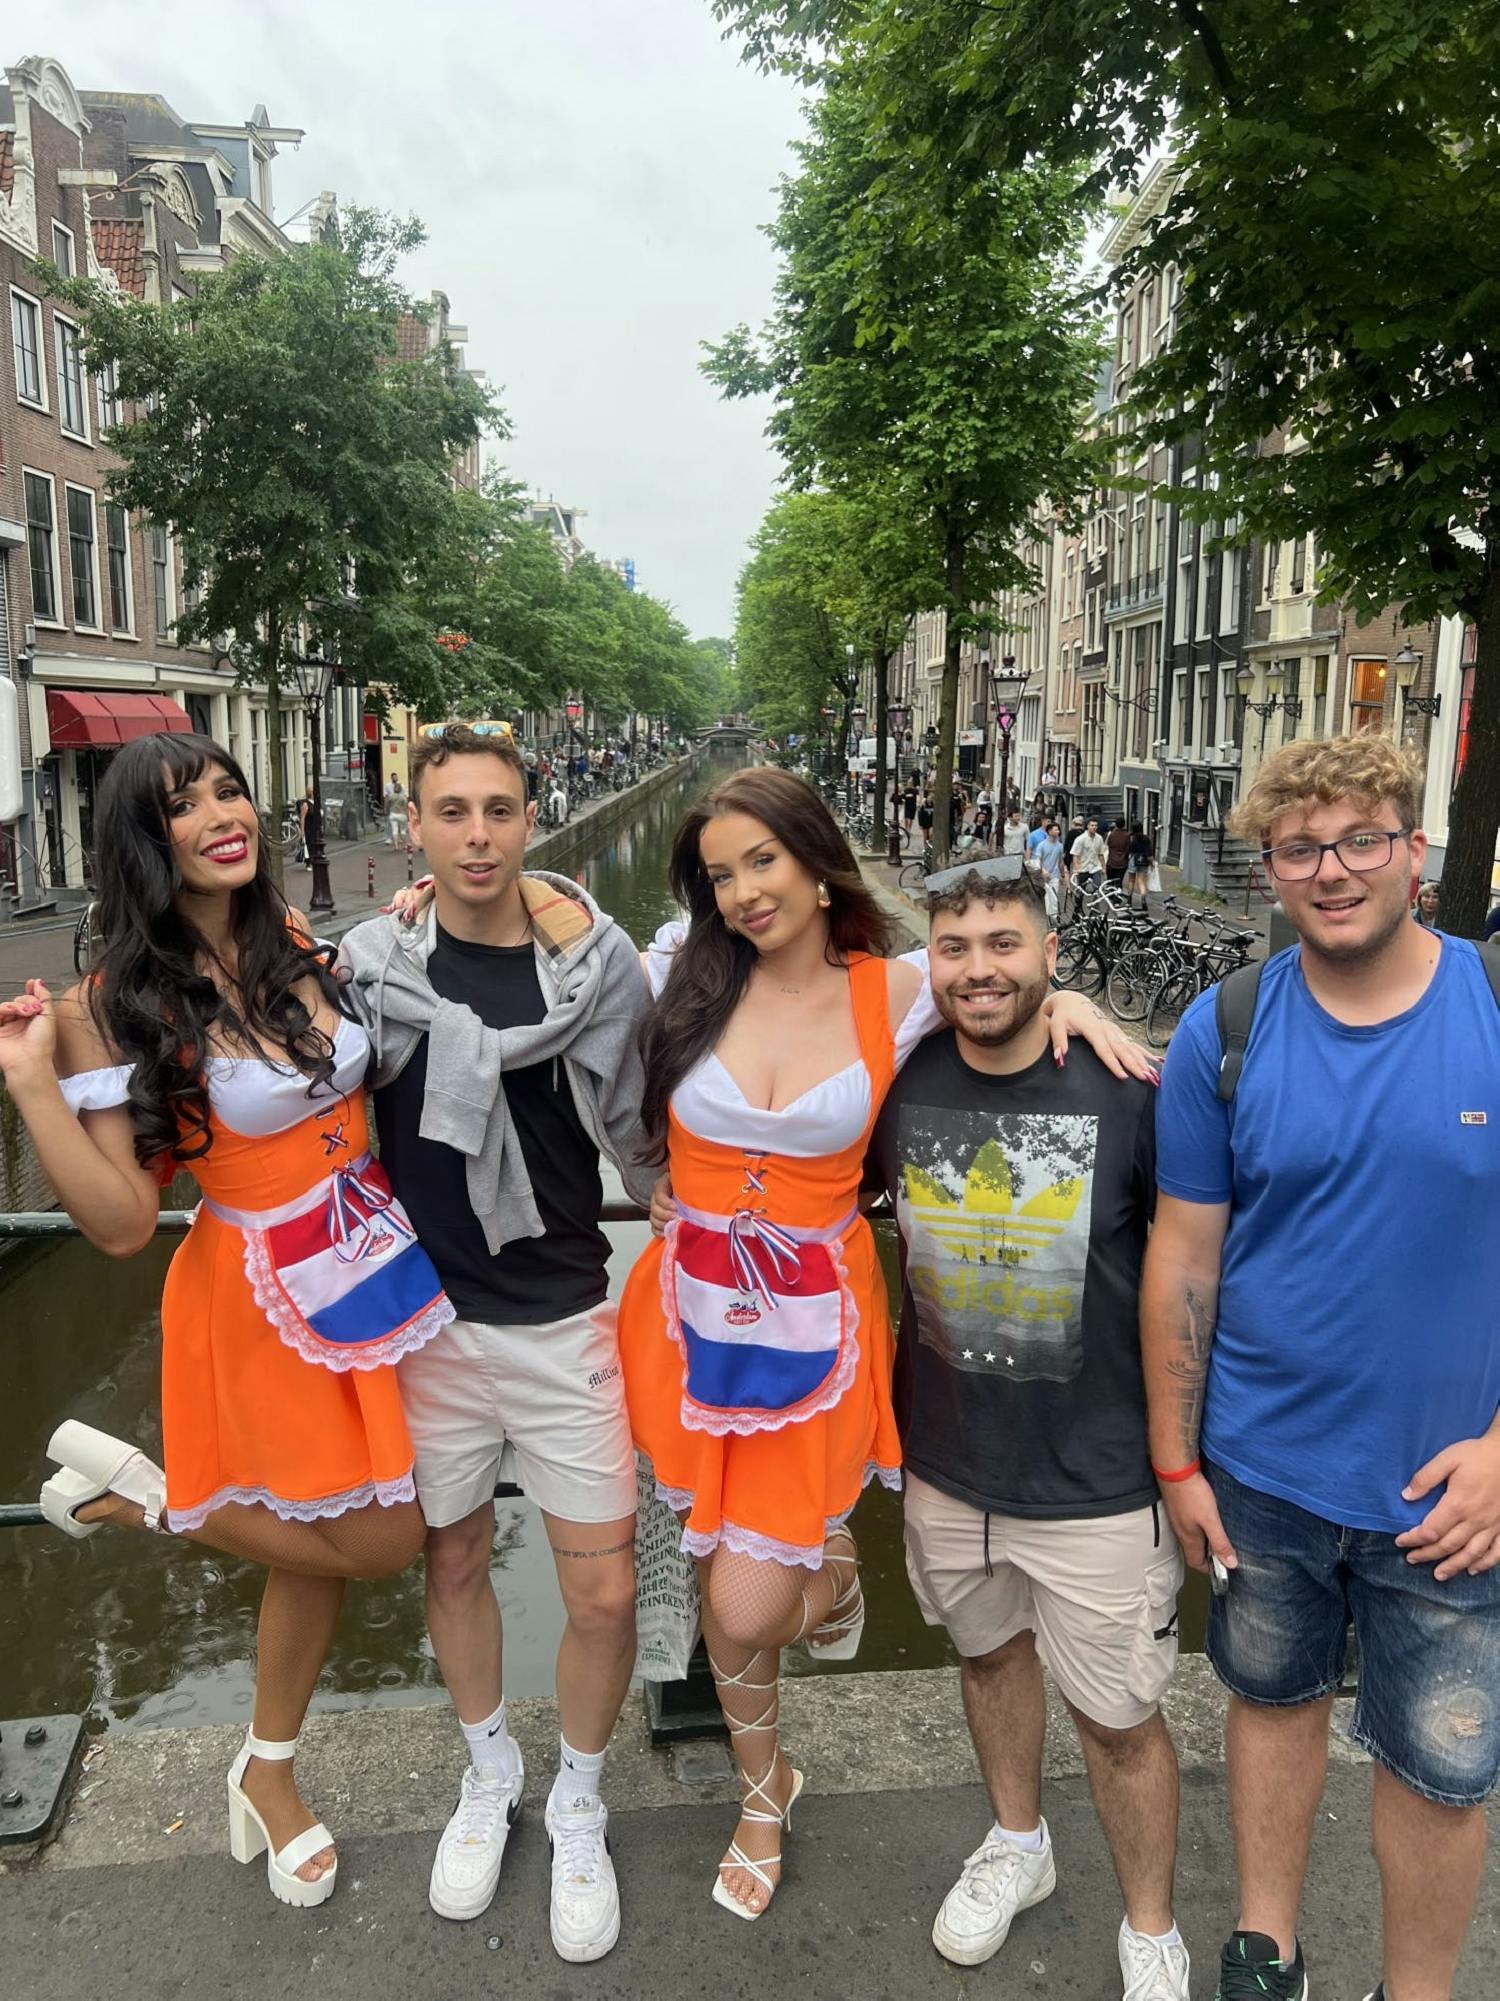 Tournée des pubs à Amsterdam avec Beer Maid